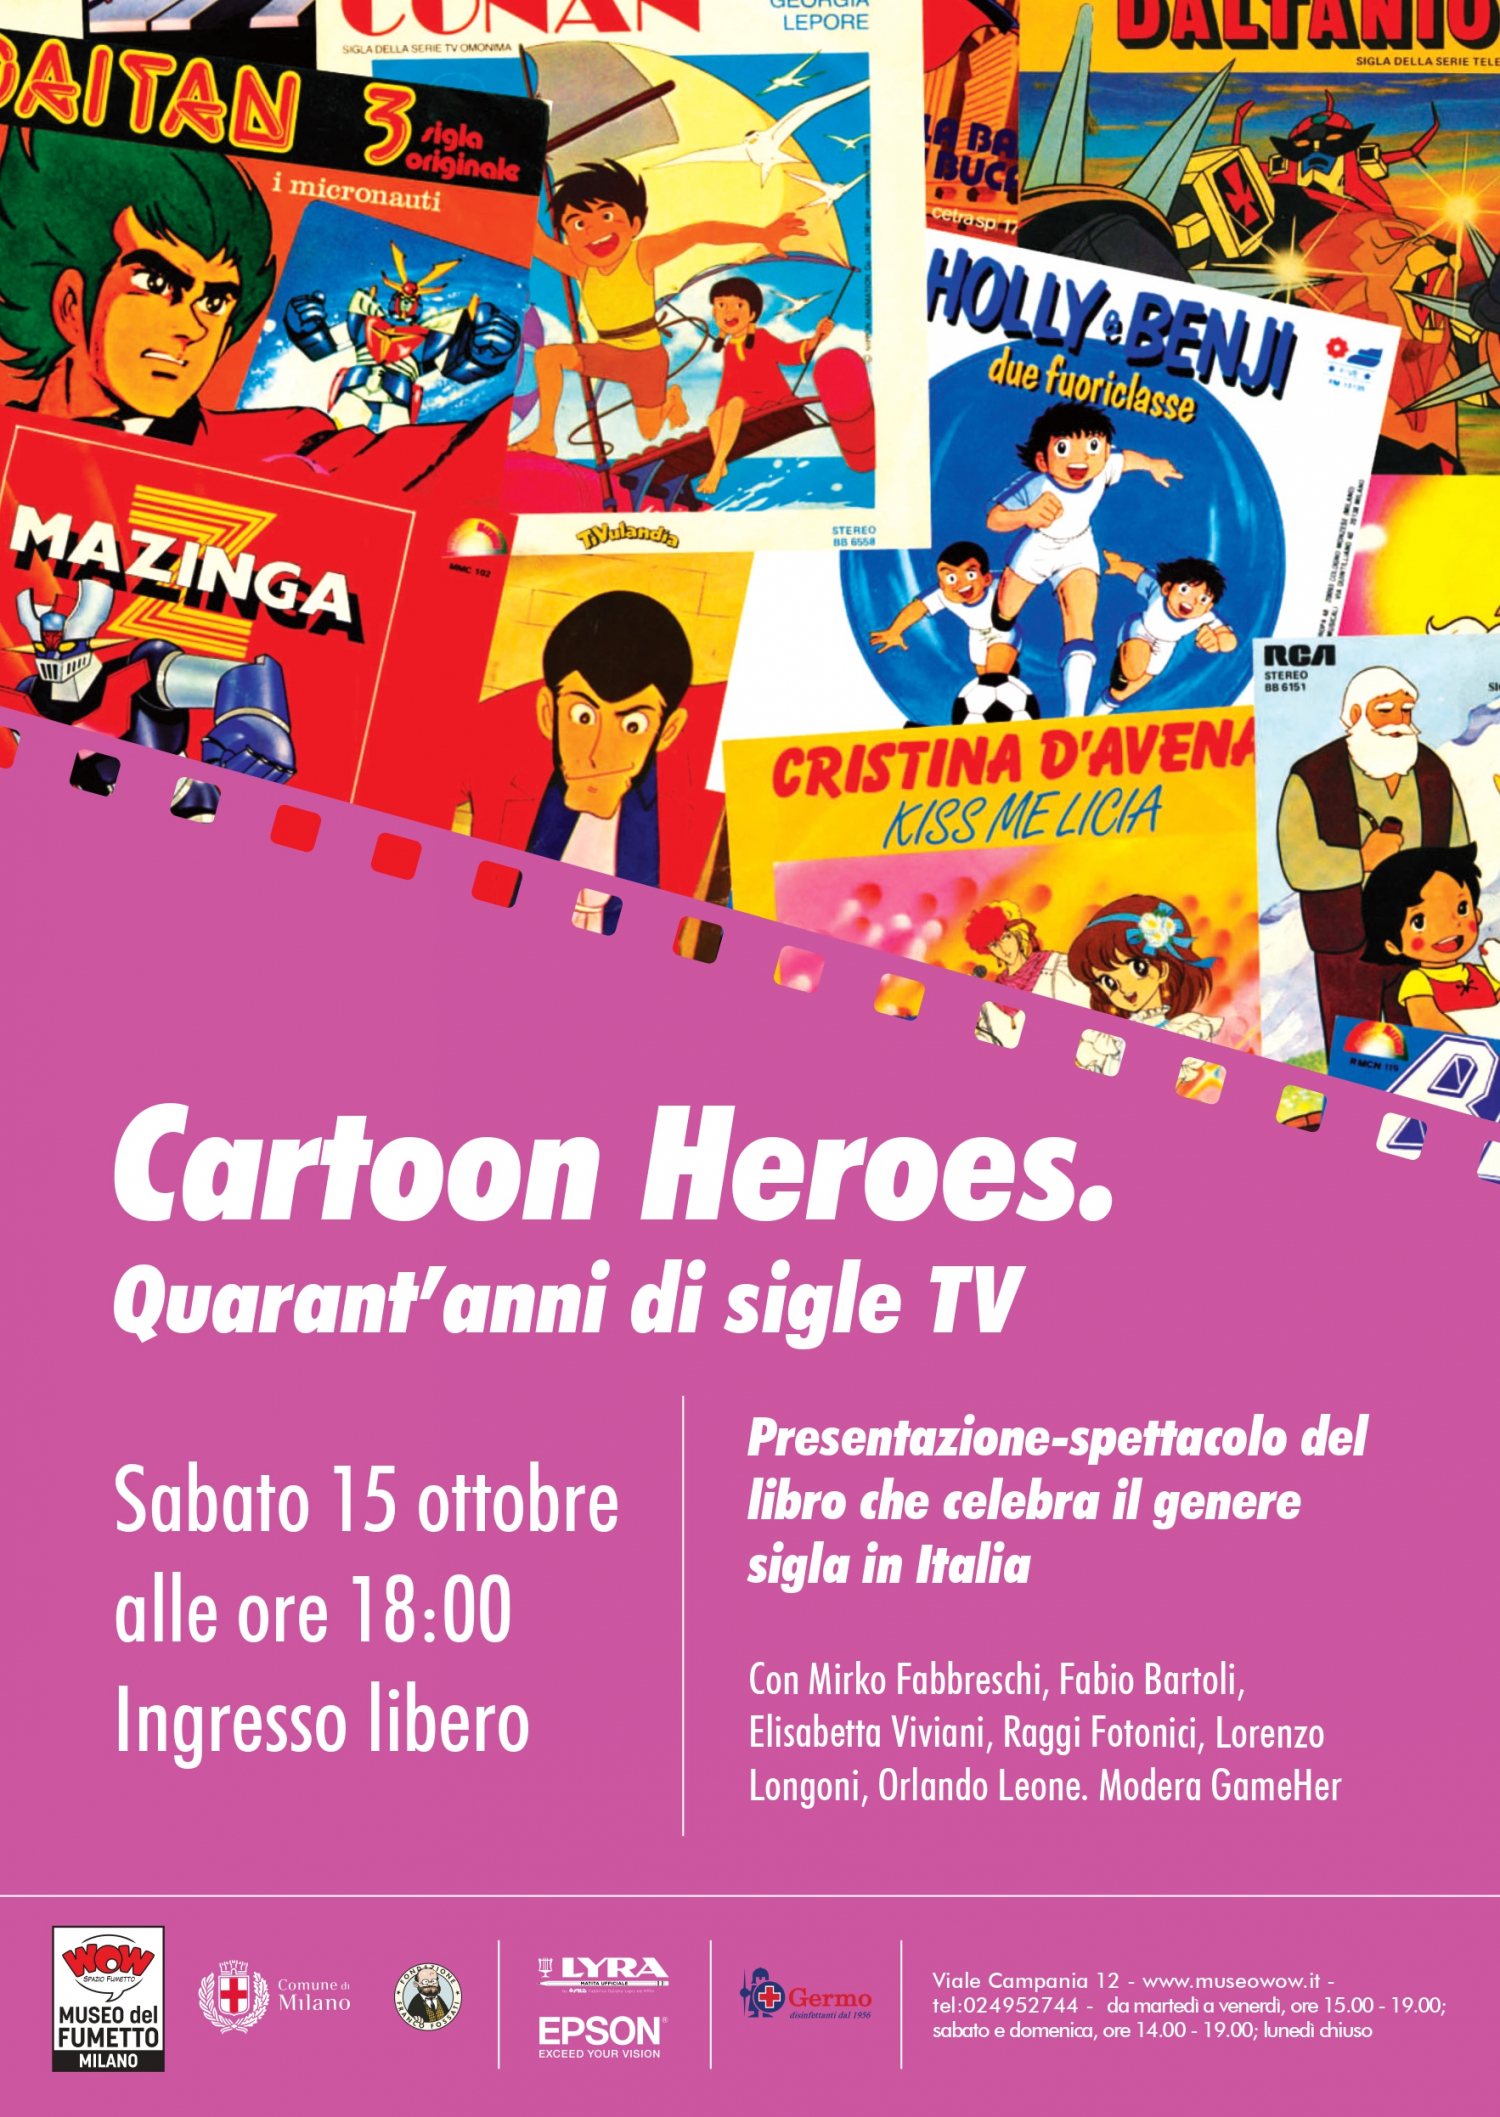 <p><strong>Sabato 15 ottobre alle ore 18:00 verr&agrave; presentata la nuova edizione di <a target="_blank" href="https://www.kappalab.it/libri/cartoon-heroes-quarantanni-di-sigle-tv/"><em>Cartoon Heroes &ndash; Quarant&rsquo;anni di sigle tv</em></a>, edito da Kappa Lab.</strong></p><p><strong>Un&rsquo;occasione per ripercorrere con una presentazione-spettacolo il rapporto tra canzoni, cinema e serie animate, in occasione del primo giorno della mostra <a target="_blank" href="http://www.museowow.it/mostre/Fumetto+Film+Fest/681">Fumetto Film Fest</a>.</strong></p><p><strong>&nbsp;</strong></p><p>A raccontare sia a parole che in musica quale sia il rapporto tra canzoni, cinema e serie animate, ci saranno l&rsquo;autore <strong>Mirko Fabbreschi</strong> (compositore, docente, autore televisivo), <strong>Laura Salamone</strong> (insieme a Fabbreschi membro dei Raggi Fotonici, storica band di autori/interpreti di sigle tv), il co-autore <strong>Fabio Bartoli</strong> (didatta, giornalista e saggista), <strong>Orlando Leone</strong> (coordinatore delle edizioni italiane di Yamato Video e responsabile del palinsesto di ANIME GENERATION), l&#39;esperto di pop-culture <strong>Lorenzo Longoni</strong> e l&#39;attrice e cantante <strong>Elisabetta Viviani</strong> (interprete della mitica sigla di Heidi). A moderare l&#39;incontro l&#39;imprenditrice digitale e divulgatrice <strong>GameHer</strong>.</p><p>Attraverso il libro, che celebra l&rsquo;avventura del genere sigla in Italia, si racconta <strong>un pezzo di storia della tv</strong> ma anche cos&rsquo;&egrave; una sigla, quali sono le sue caratteristiche e le sue modalit&agrave; di composizione, esecuzione e trasmissione, come questo genere unico &egrave; nato e si &egrave; evoluto in Italia, qual &egrave; il suo futuro e soprattutto chi sono i suoi eroi: gli autori e interpreti fondamentali della cartoon music.</p><p>&nbsp;</p><p><strong>Gli autori</strong></p><p><strong>Mirko Fabbreschi</strong> &egrave; compositore di colonne sonore per cinema (<em>Aquile Randagie</em>, <em>CUB</em>), teatro <em>(Zerocalcare - Kobane Calling on stage</em>, <em>Tuono Pettinato - Corpicino</em>) e tv (<em>MegaGulp</em>, <em>TG3 Leonardo</em>), autore televisivo (Rai2, Music Box), docente e ideatore del metodo didattico &laquo;Cartoon School&raquo;. &Egrave; autore, insieme ad Alda Teodorani, dell&rsquo;audio-libro <em>15 desideri</em> (Flaccovio Editore). Ha diretto la Cinecitt&agrave; Orchestra per l&rsquo;opera editoriale <em>Fratelli d&rsquo;Italia &ndash; L&rsquo;inno di Mameli spiegato ai ragazzi</em> (DeAgostini). Ha scritto il saggio <em>Carta Canta, quando i fumetti diventano canzoni</em> (Lavieri Editore). Nel mondo dell&#39;animazione &egrave; sia doppiatore (<em>Gumball</em>, <em>Apple e Onion</em>) che direttore di doppiaggio musicale (<em>Polly Pocket</em>, <em>Power Players</em>) ma &egrave; soprattutto leader e fondatore dei <strong>Raggi Fotonici</strong>, storici autori e interpreti di sigle tv come <em>Ape Maia</em>, <em>Hello Kitty</em>, <em>Digimon</em>, <em>Teenage Mutant Ninja Turtles</em>, <em>Hot Wheels</em>, <em>Fairy Tail</em>.</p><p>&nbsp;</p><p><strong>Fabio Bartoli</strong> ha pubblicato per Tunu&eacute; i libri <em>Vado, Tokyo e torno. Diario di viaggio nel cuore del Giappone (e anche un po&rsquo; pi&ugrave; in l&agrave;)</em>, <em>Mangascienza. Messaggi filosofici ecologici nell&rsquo;animazione fantascientifica giapponese per ragazzi</em>, <em>Anime e sport. Grandi atleti nella realt&agrave; e nell&rsquo;animazione giapponese</em> e, con Elettra Dafne Infante, <em>Vita da cartoni. Una microguida al cinema d&rsquo;animazione</em>.</p><p>&nbsp;</p>